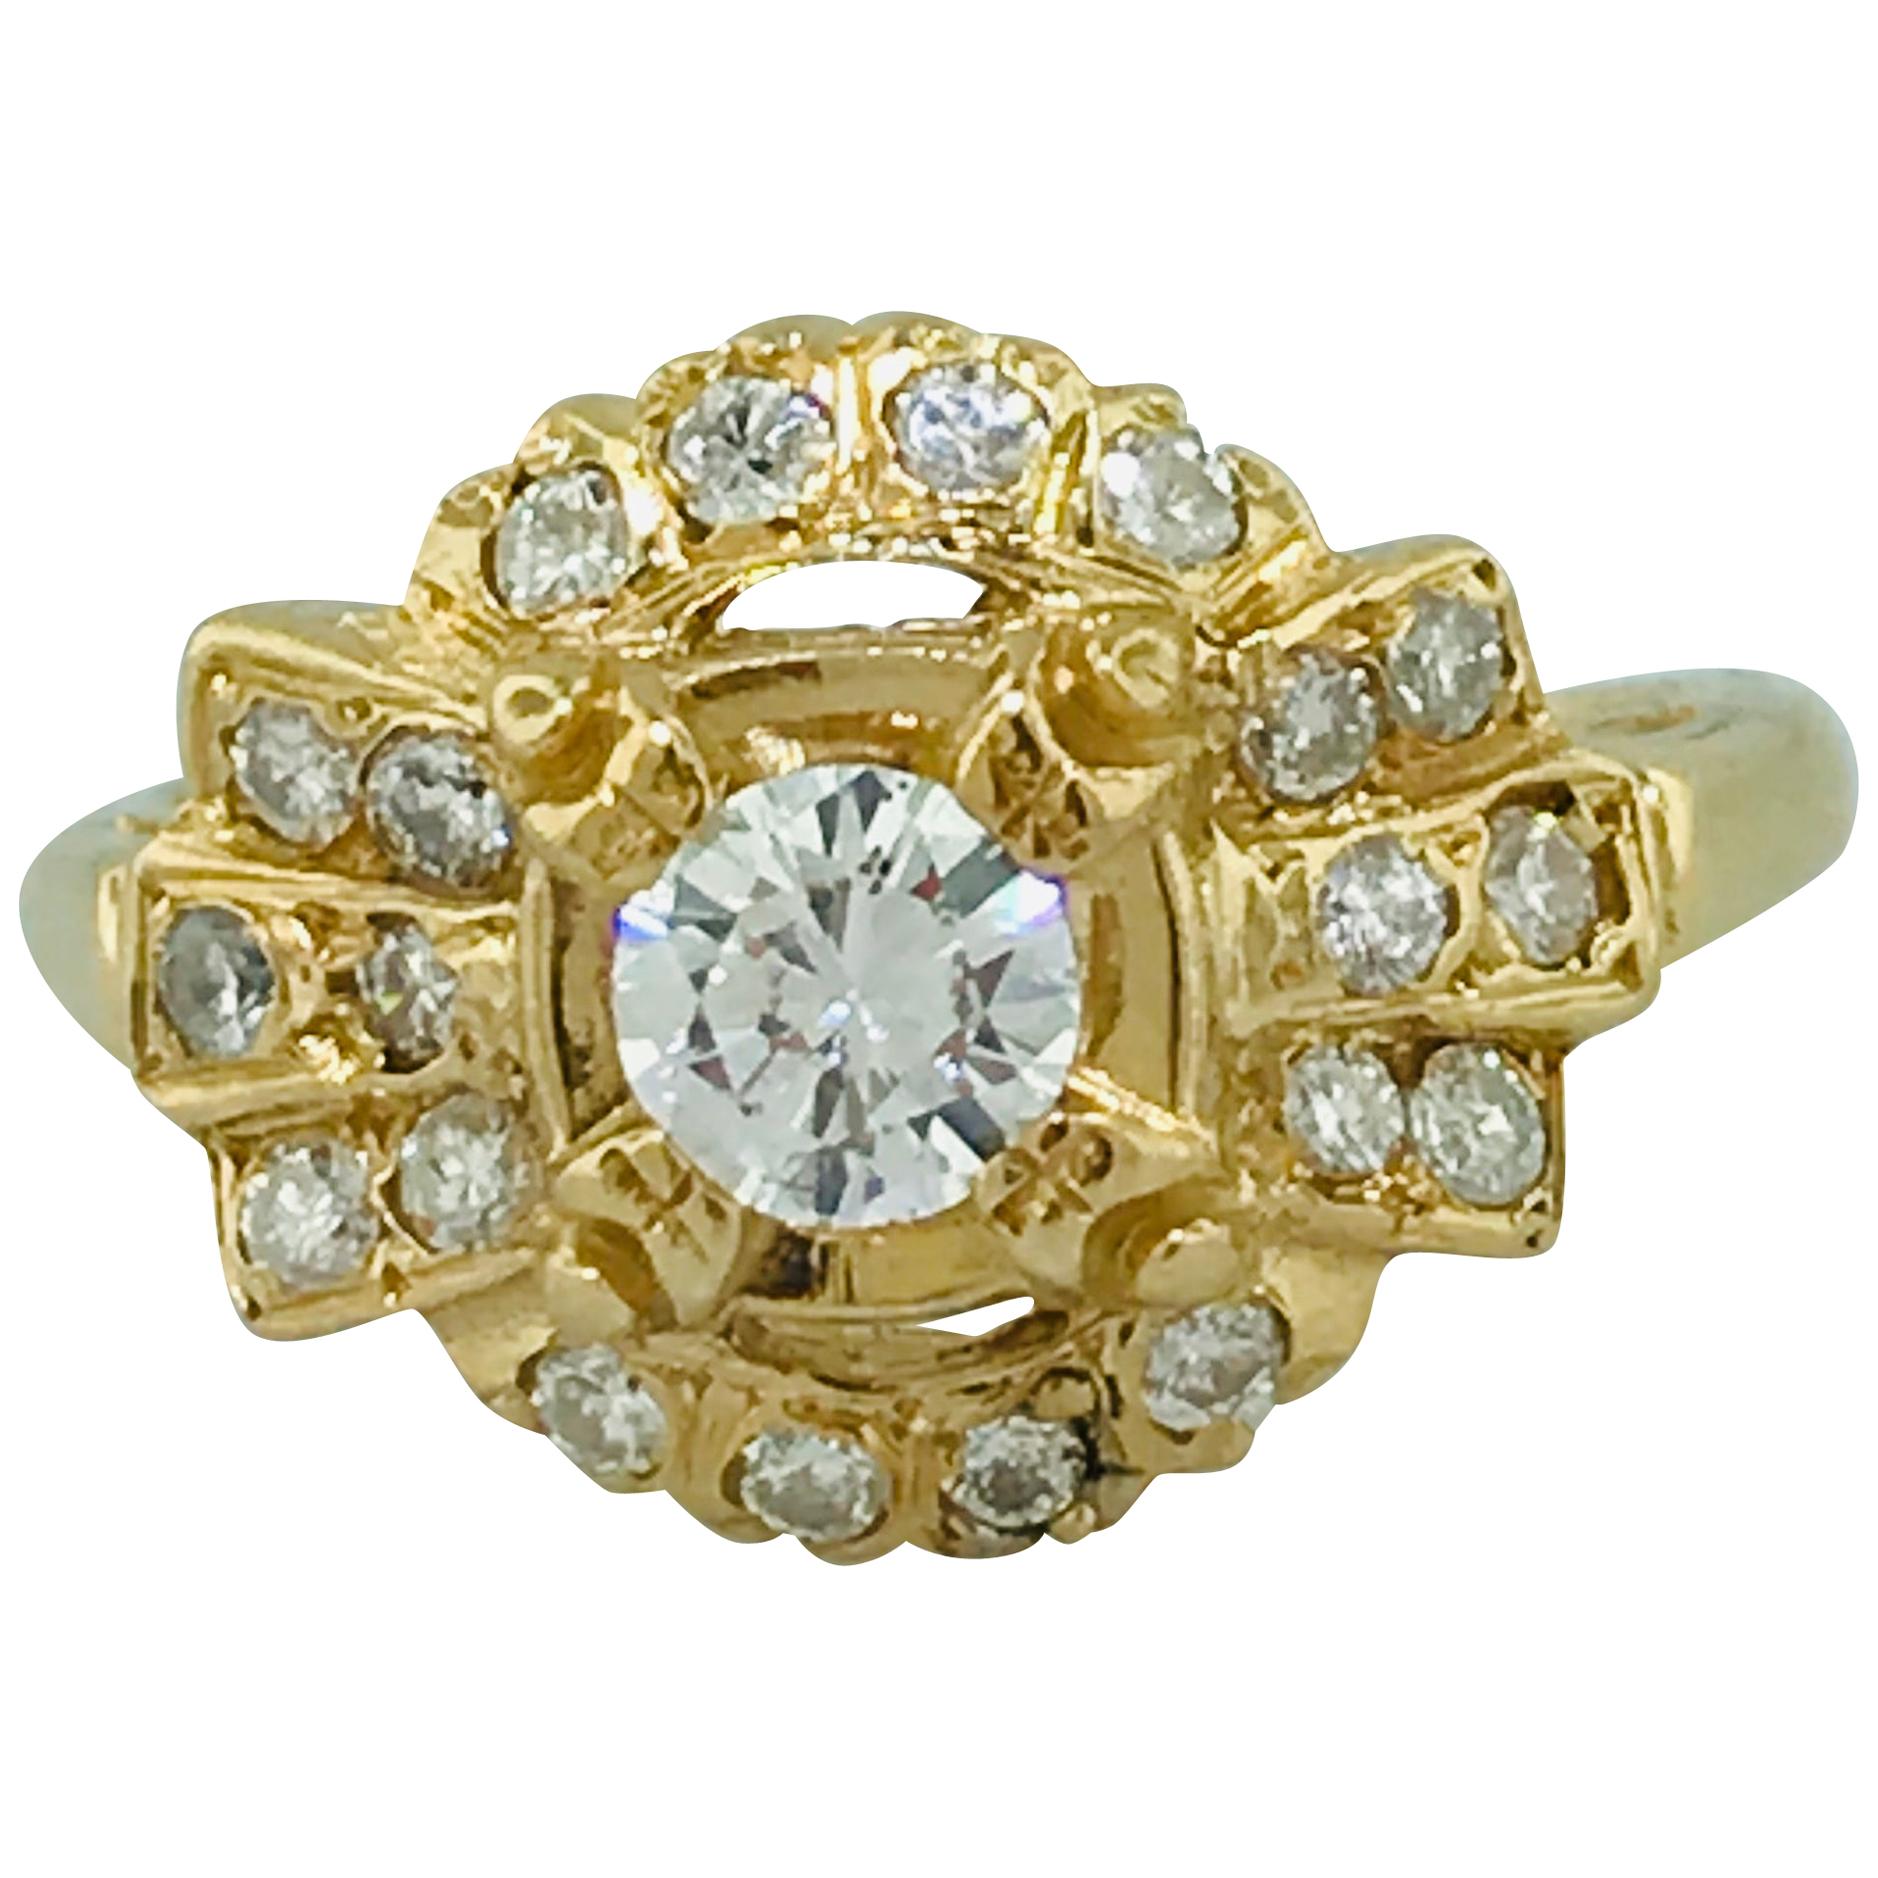 Vintage circa 1935 .50 Carat Diamond Engagement Ring in 14 Karat Yellow Gold